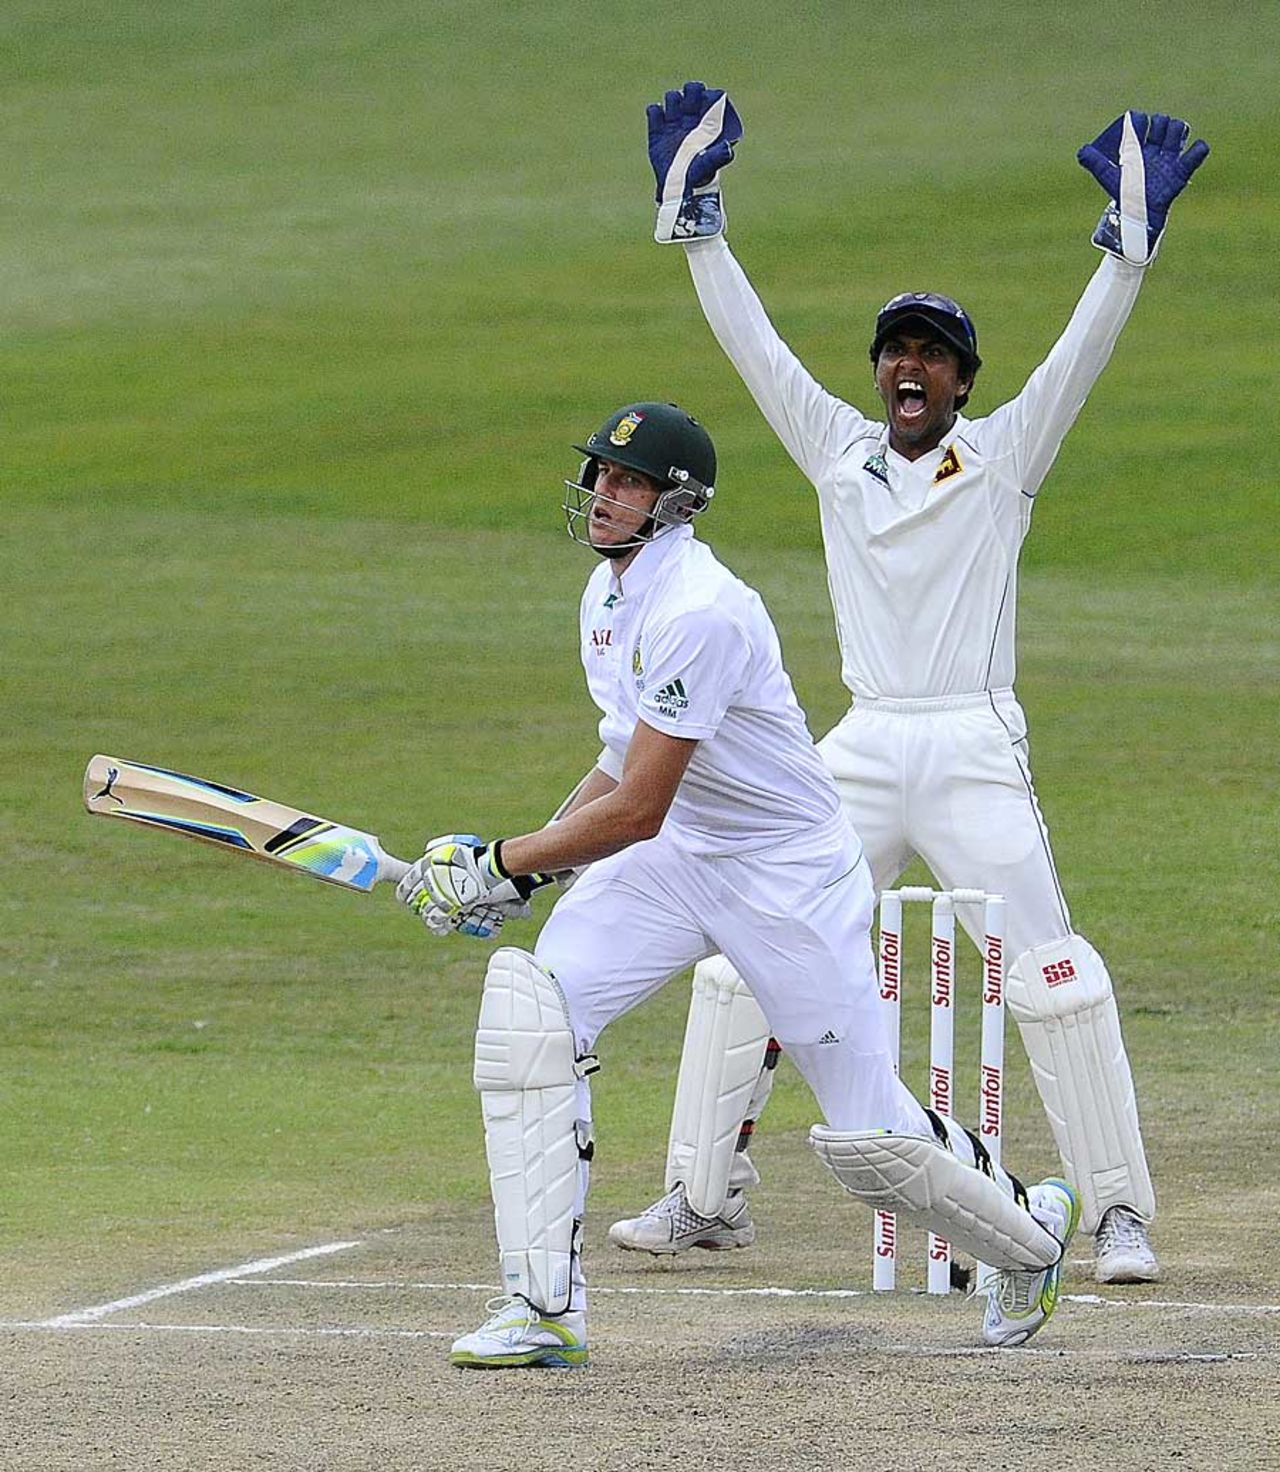 Morne Morkel fell for 5, South Africa v Sri Lanka, 2nd Test, Durban, 4th day, December 29, 2011